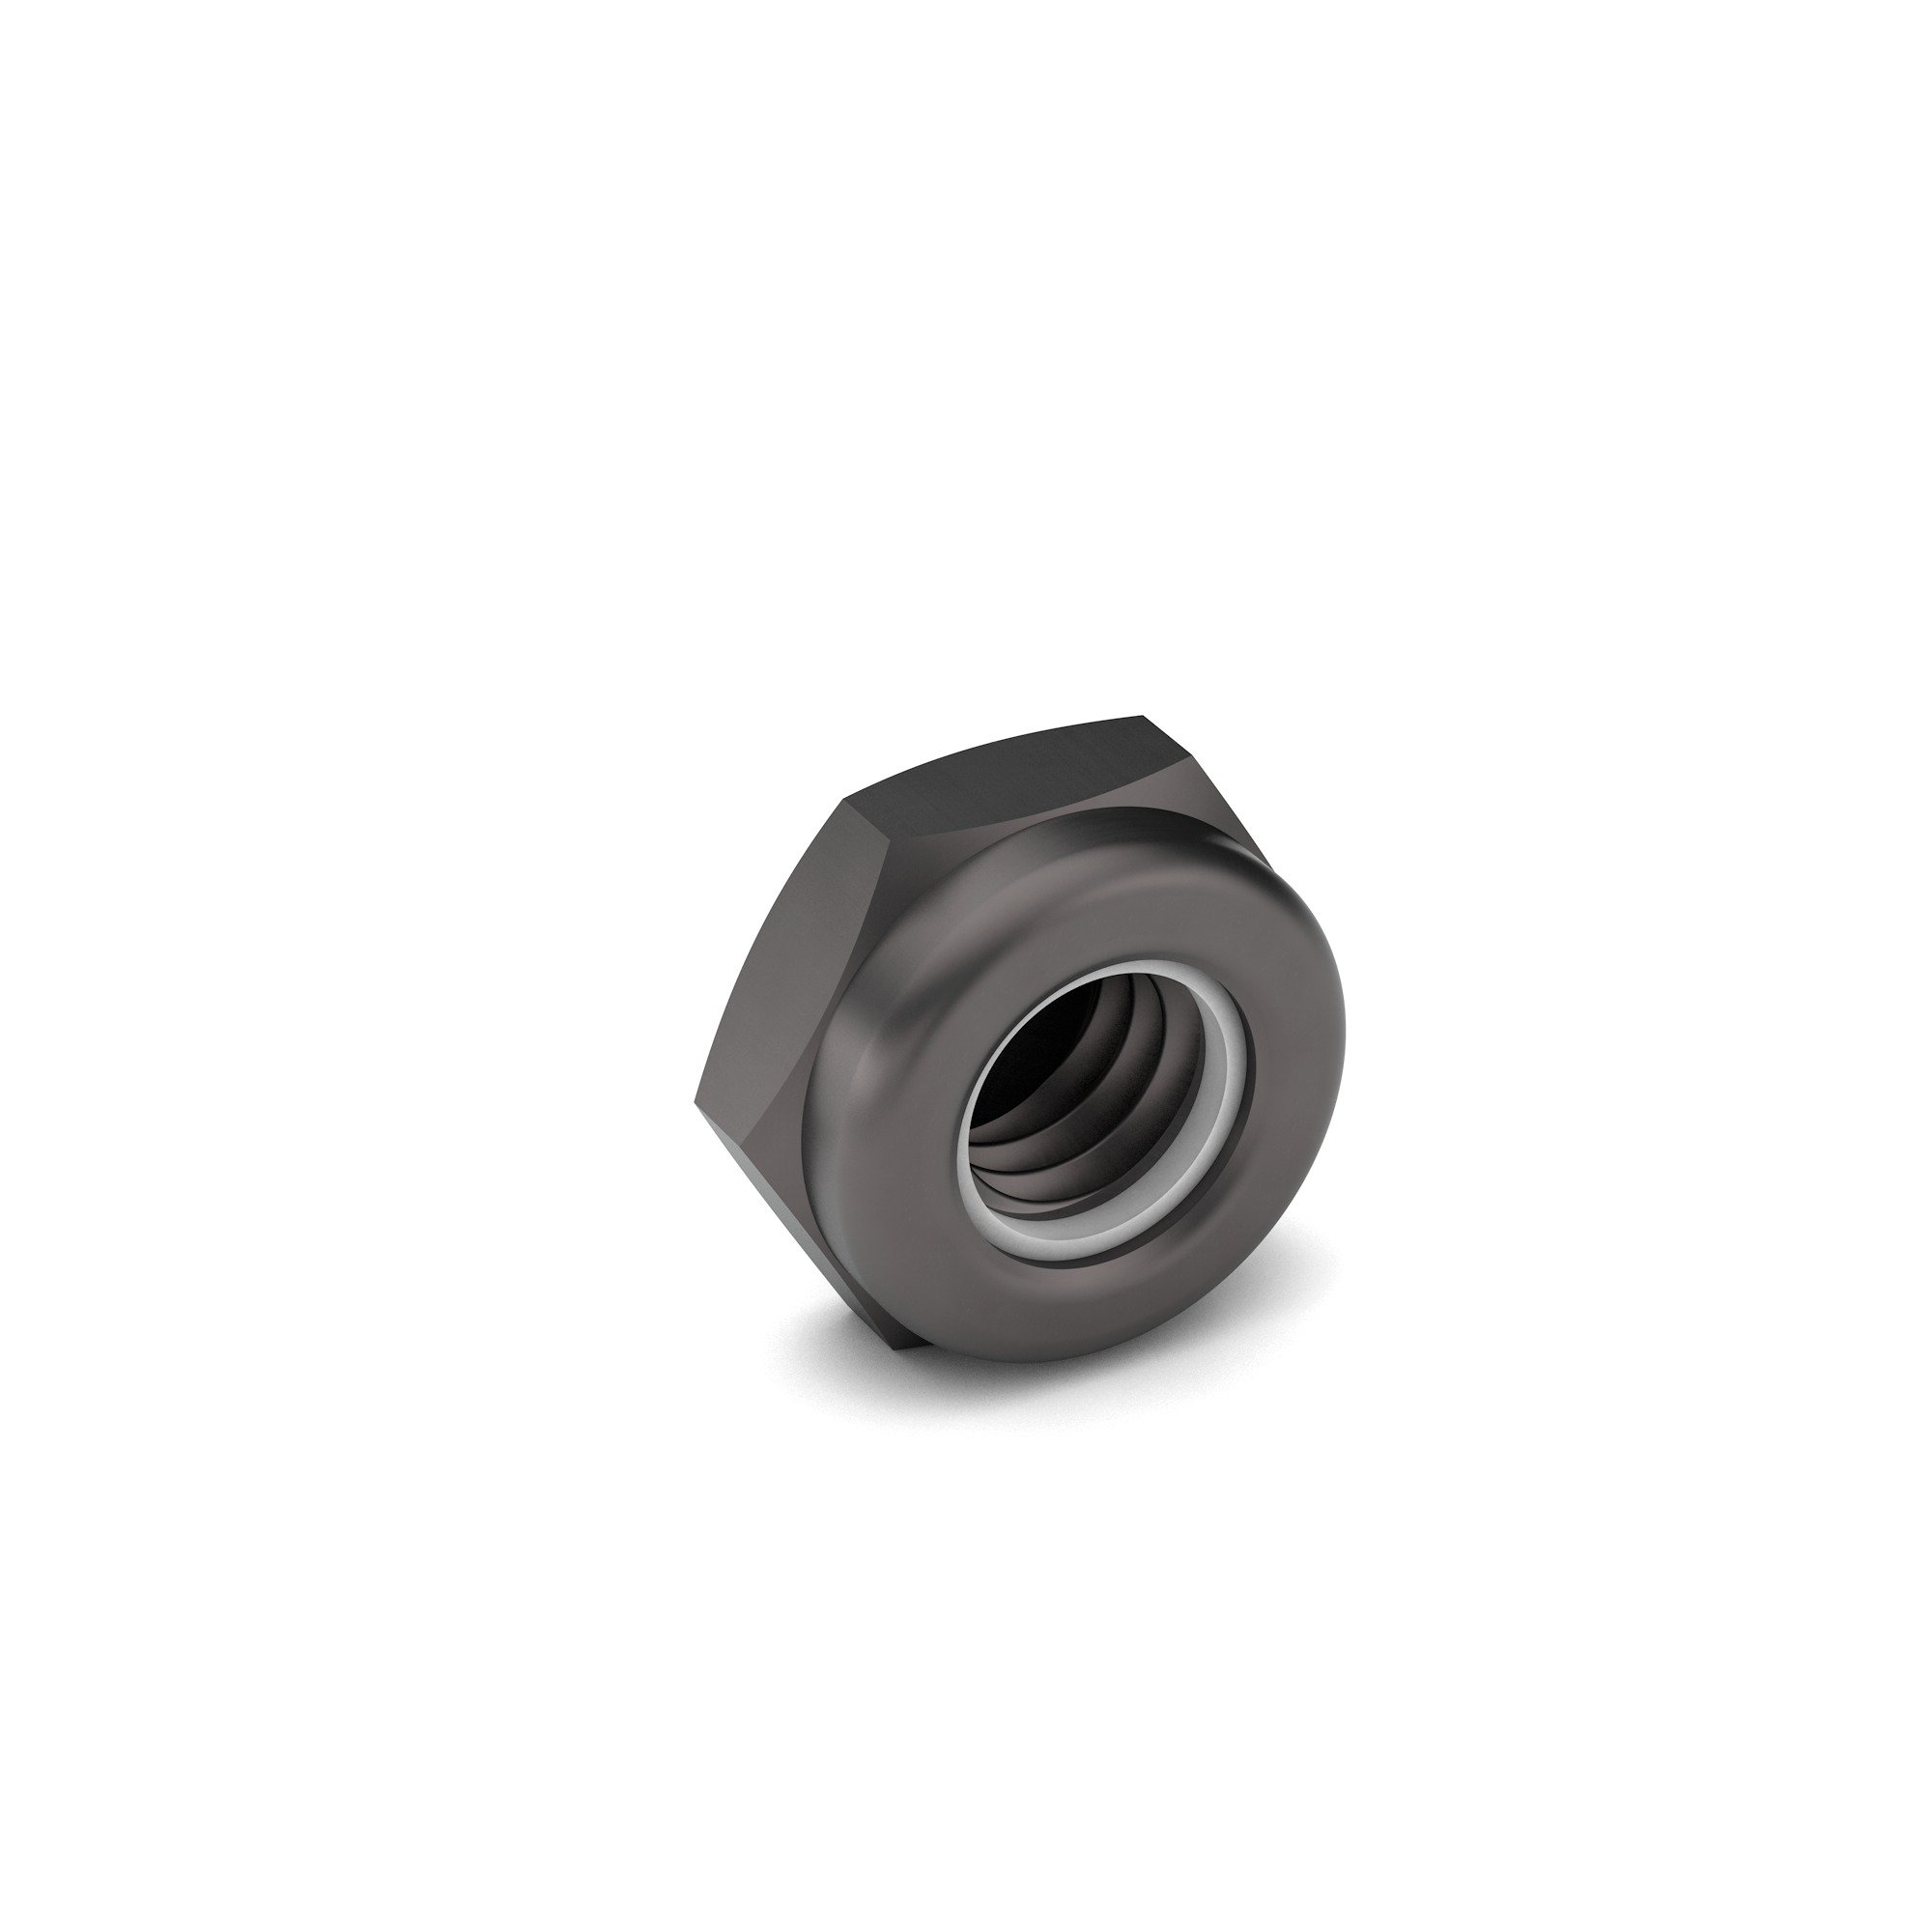 7/16-20 Carbon Steel NTE Nylon Insert Lock Nut Zinc Clear